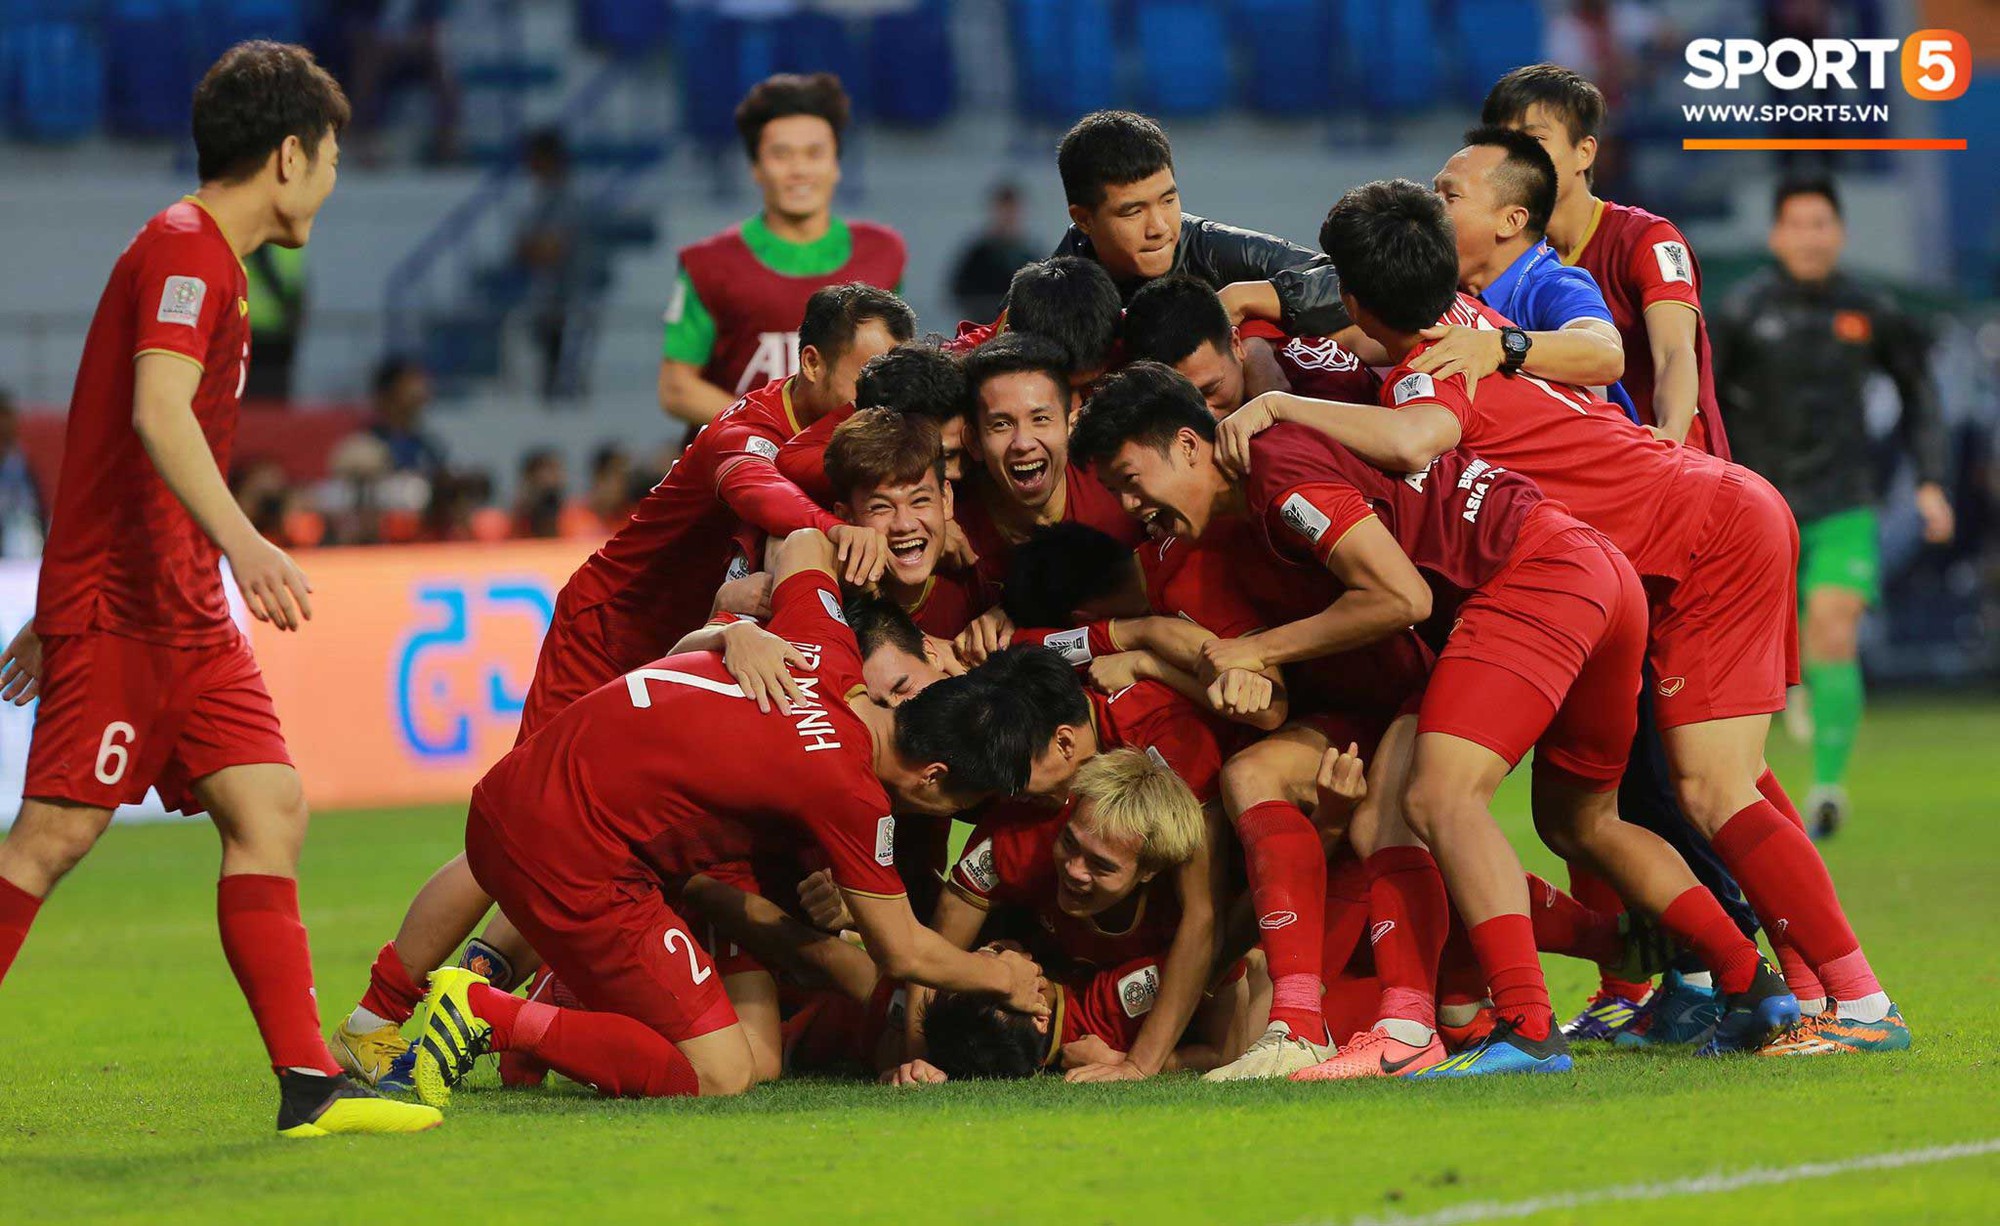 Bùi Tiến Dũng - một thủ môn tài năng và đầy quyết tâm của đội tuyển Việt Nam. Hình ảnh của anh sẽ cho bạn thấy sự tập trung, khích lệ và lòng yêu đất nước mạnh mẽ trong suốt những trận đấu quyết liệt.